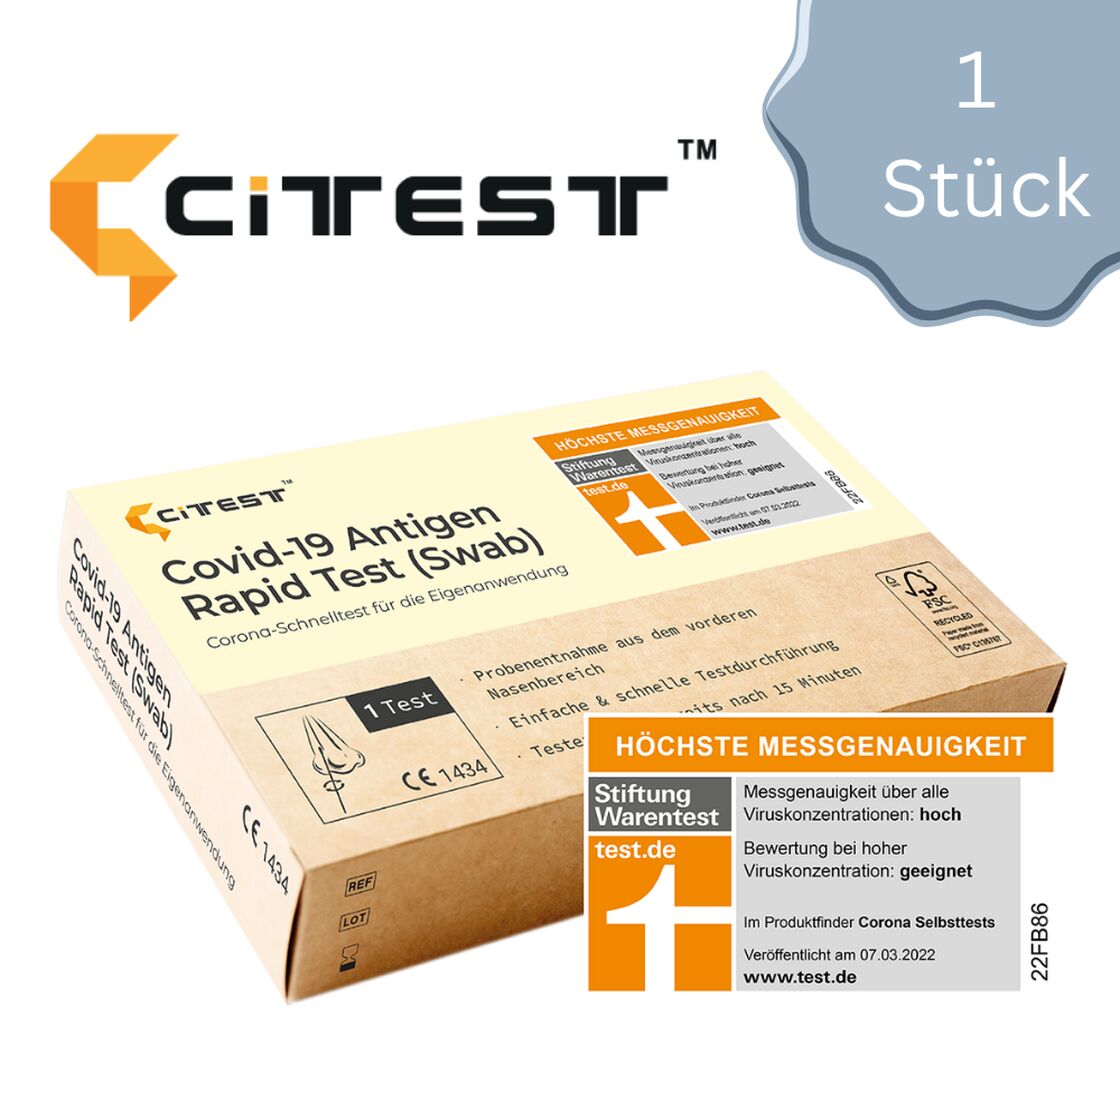 CITEST Covid-19 Antigen Rapid (Swab) zur Laienanwendung - gelistet